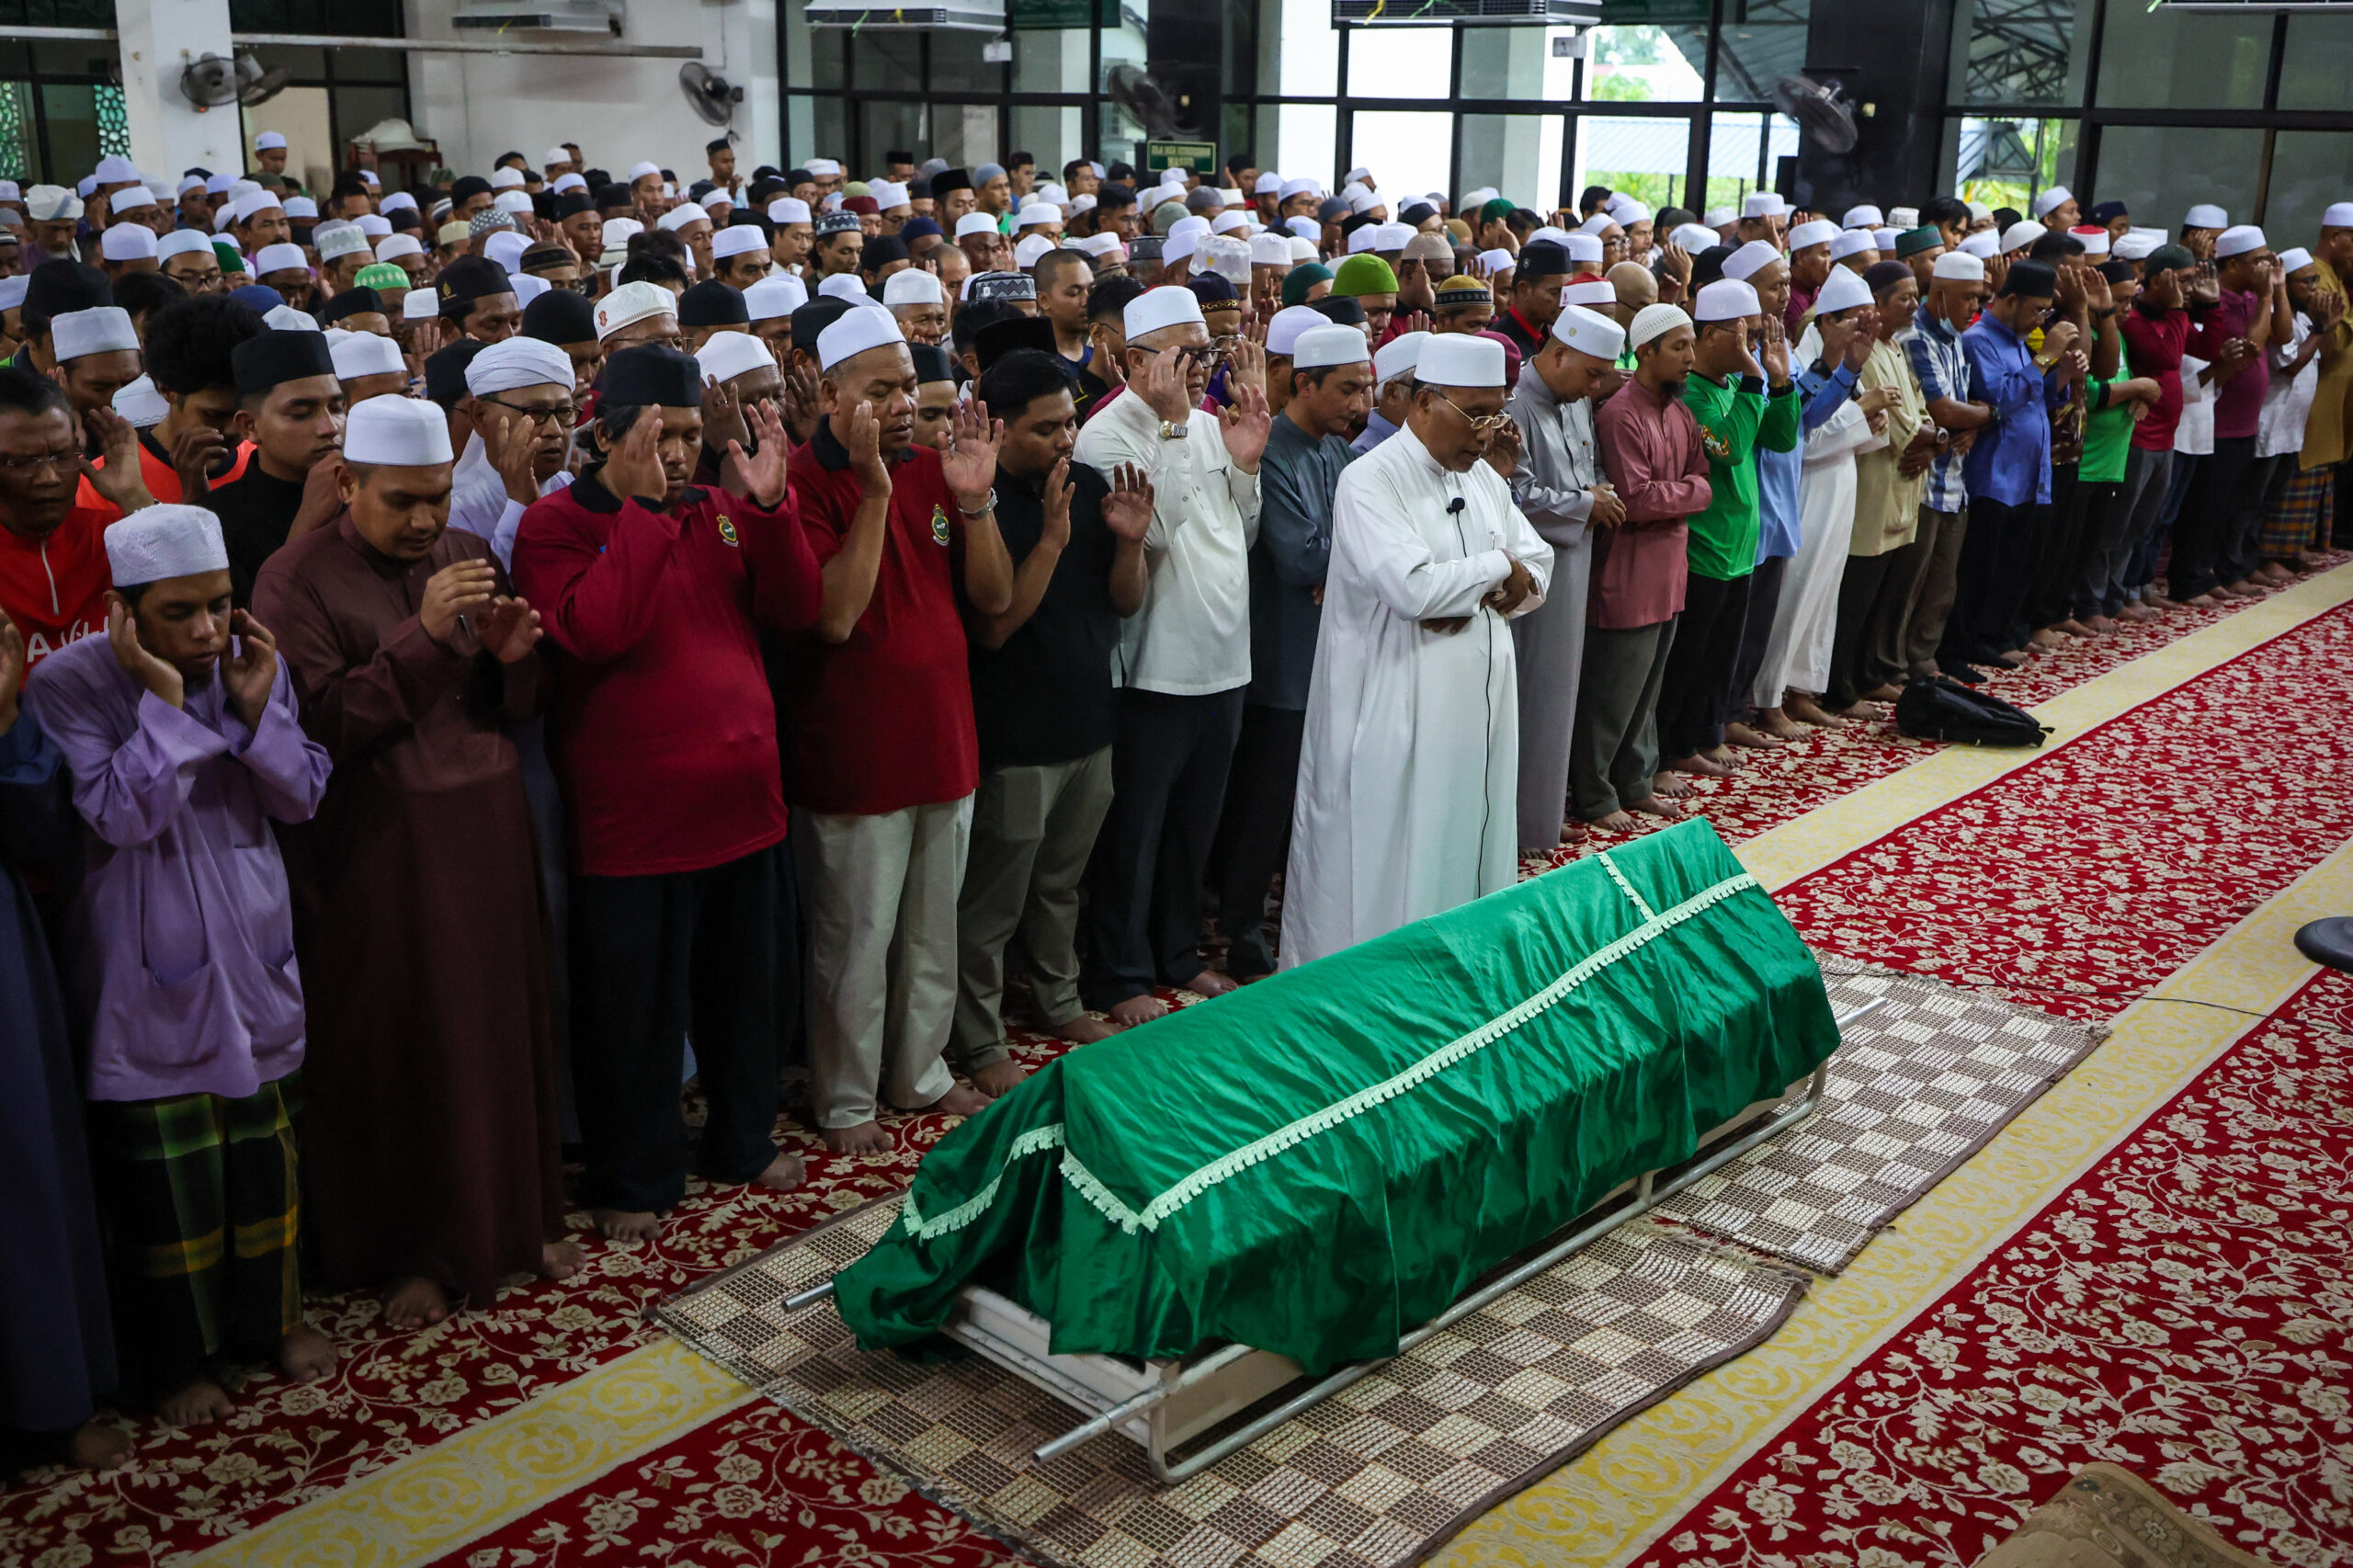 Sungai Bakap assemblyman laid to rest